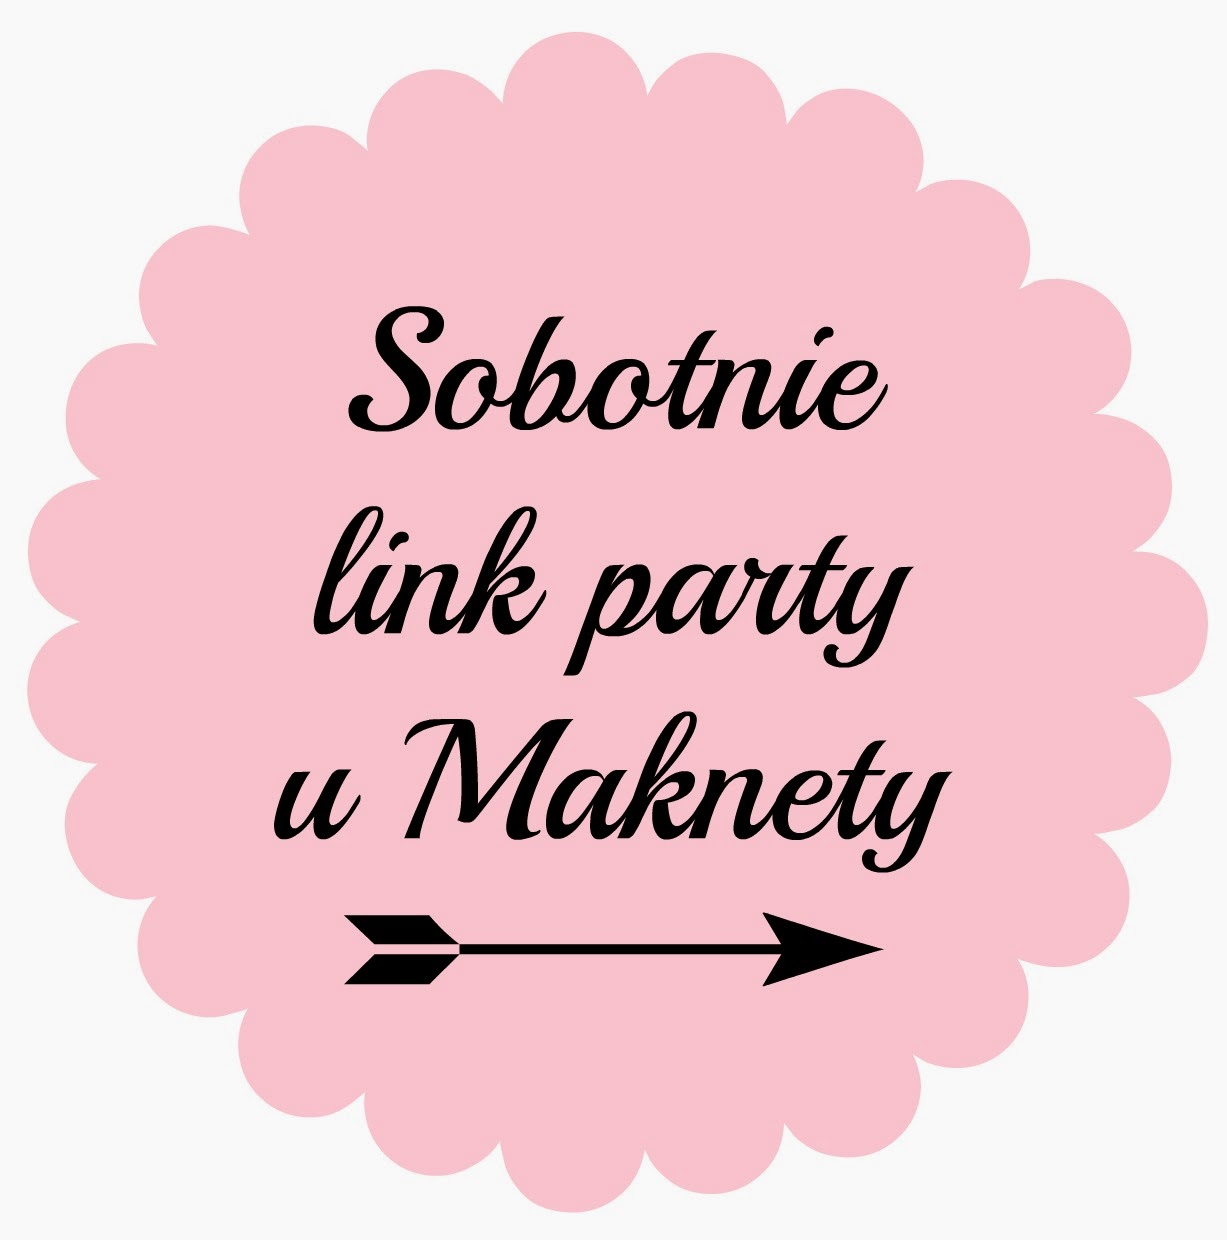 Sobotnie link party u Maknety